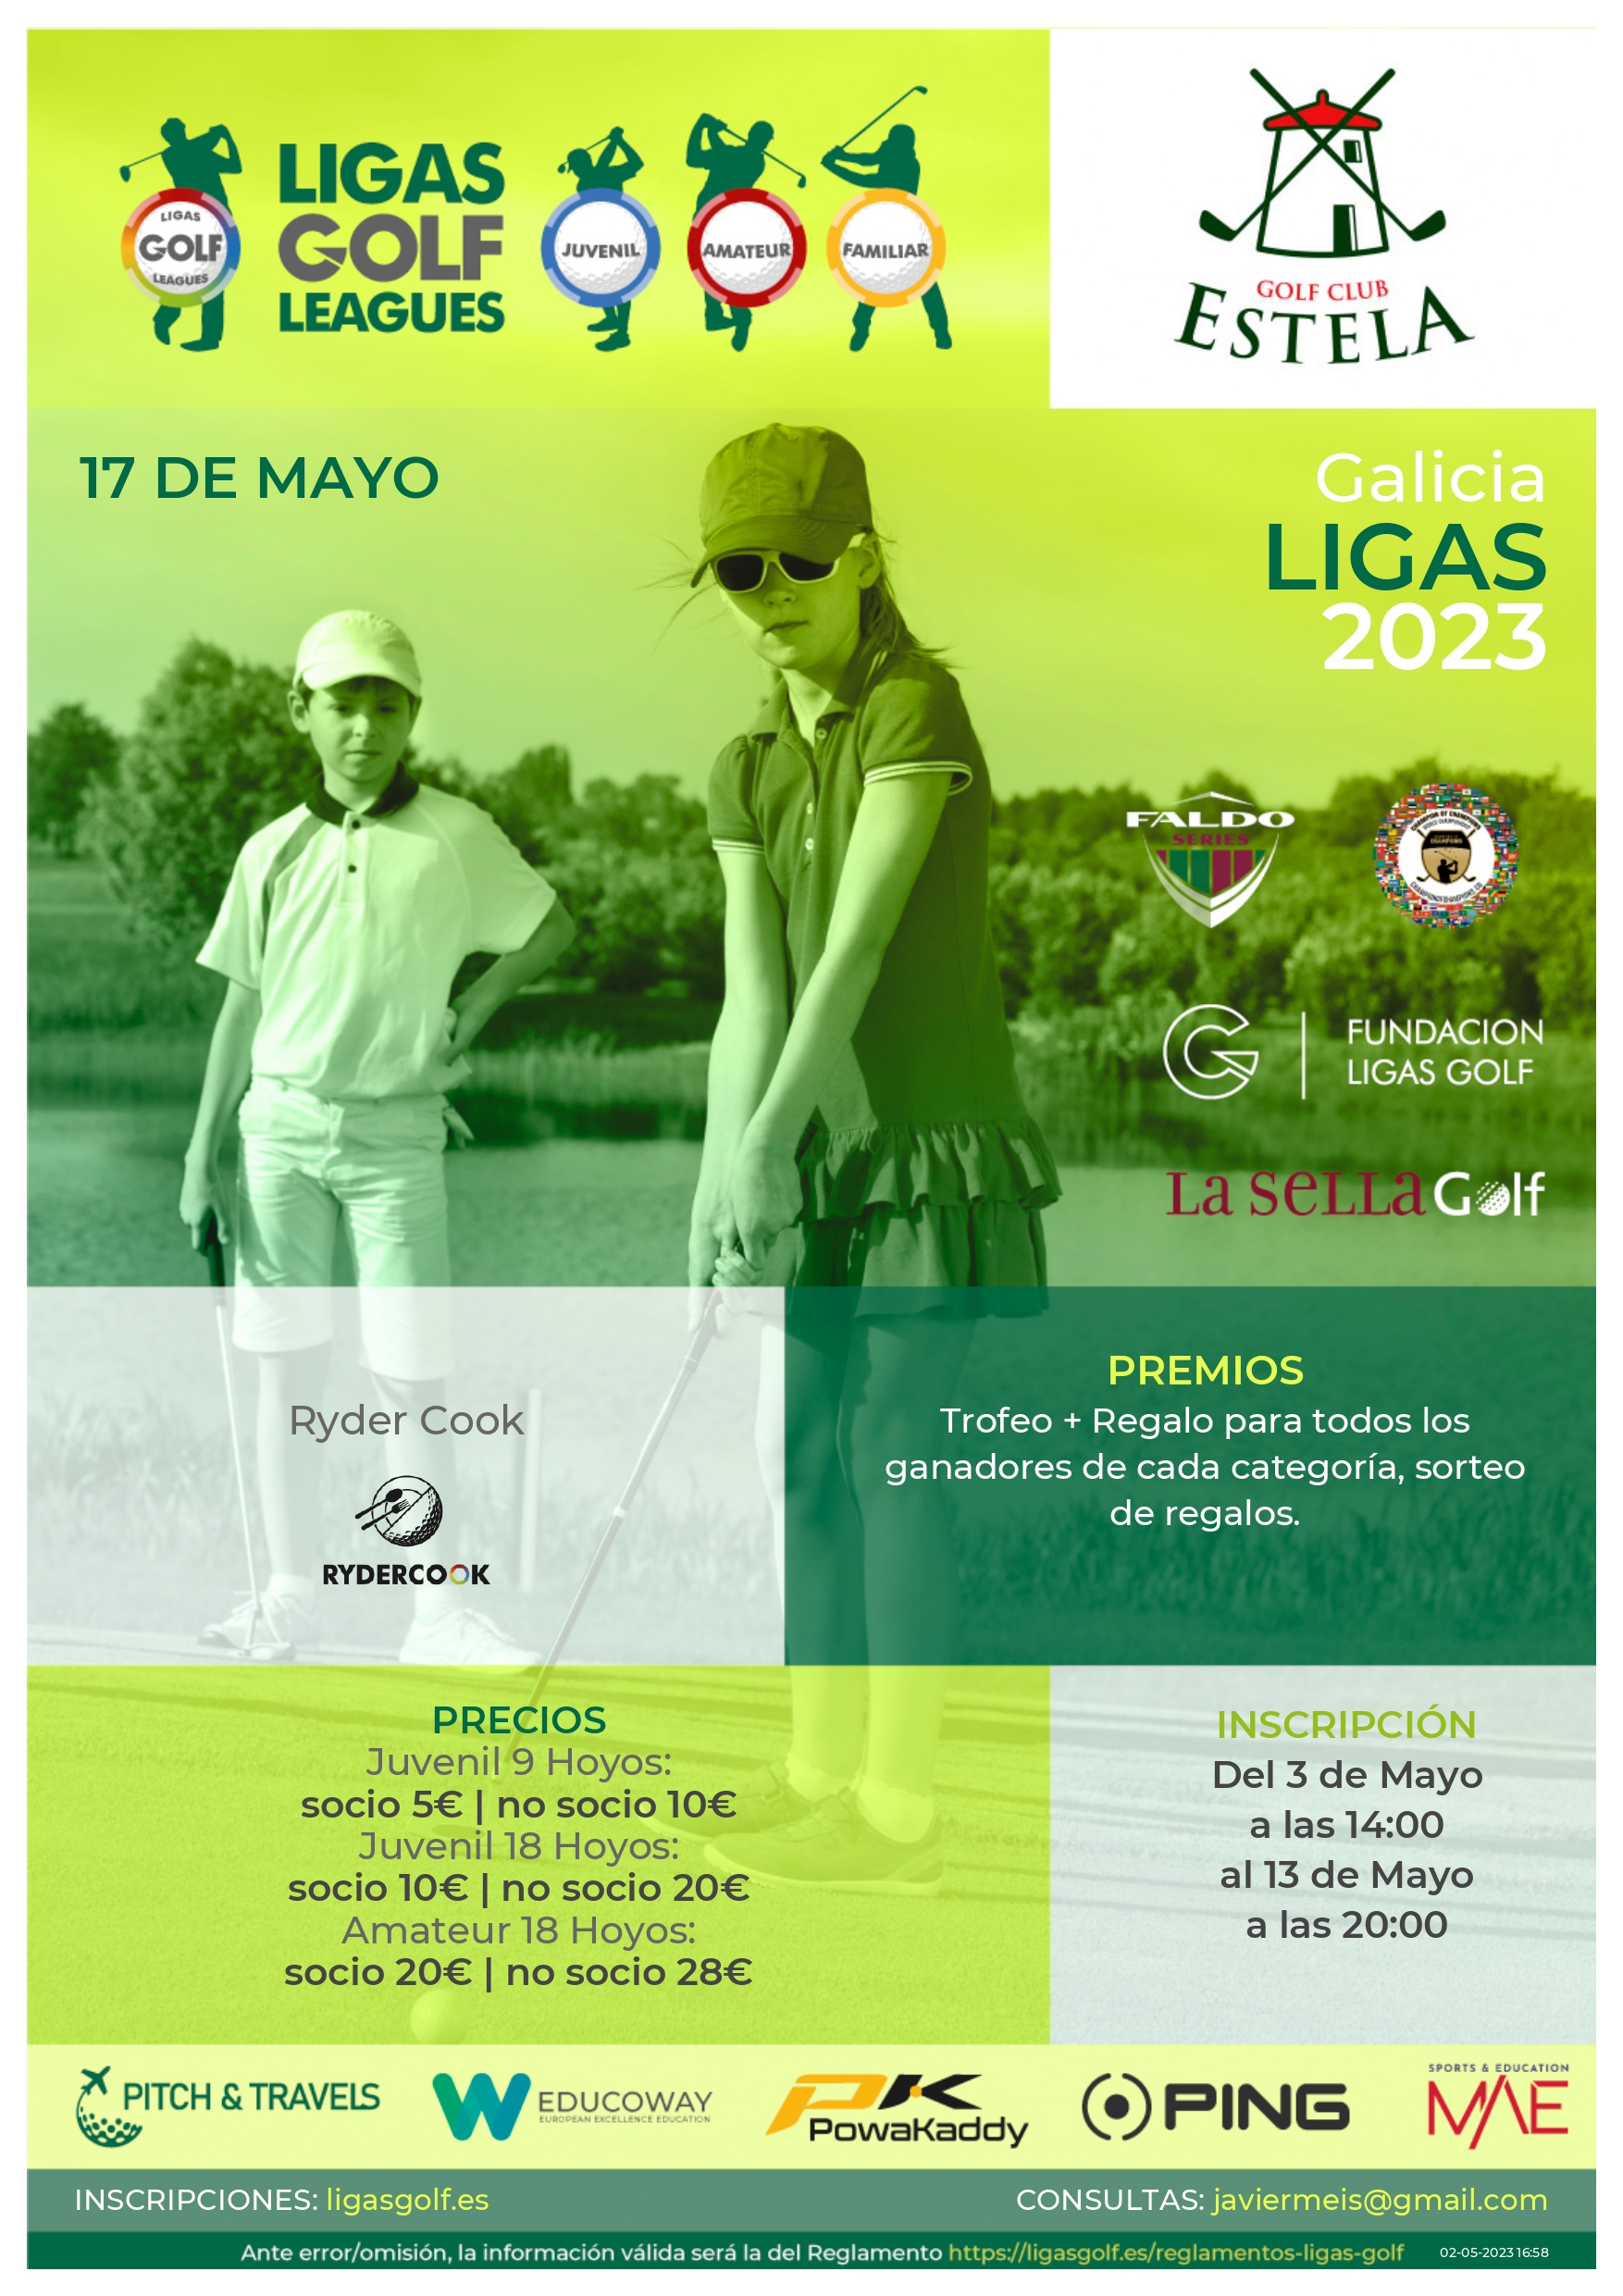 Galicia Ligas Golf